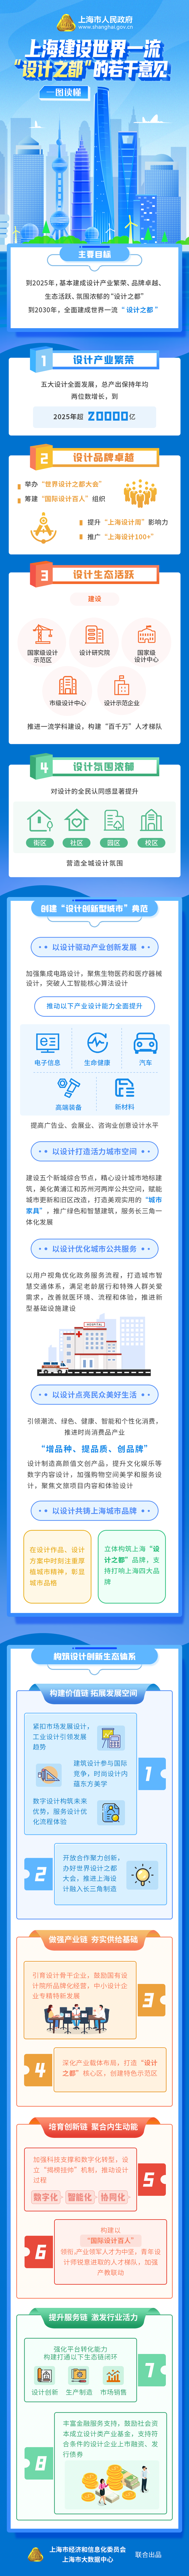 一图读懂《上海建设世界一流“设计之都”的若干意见》.png